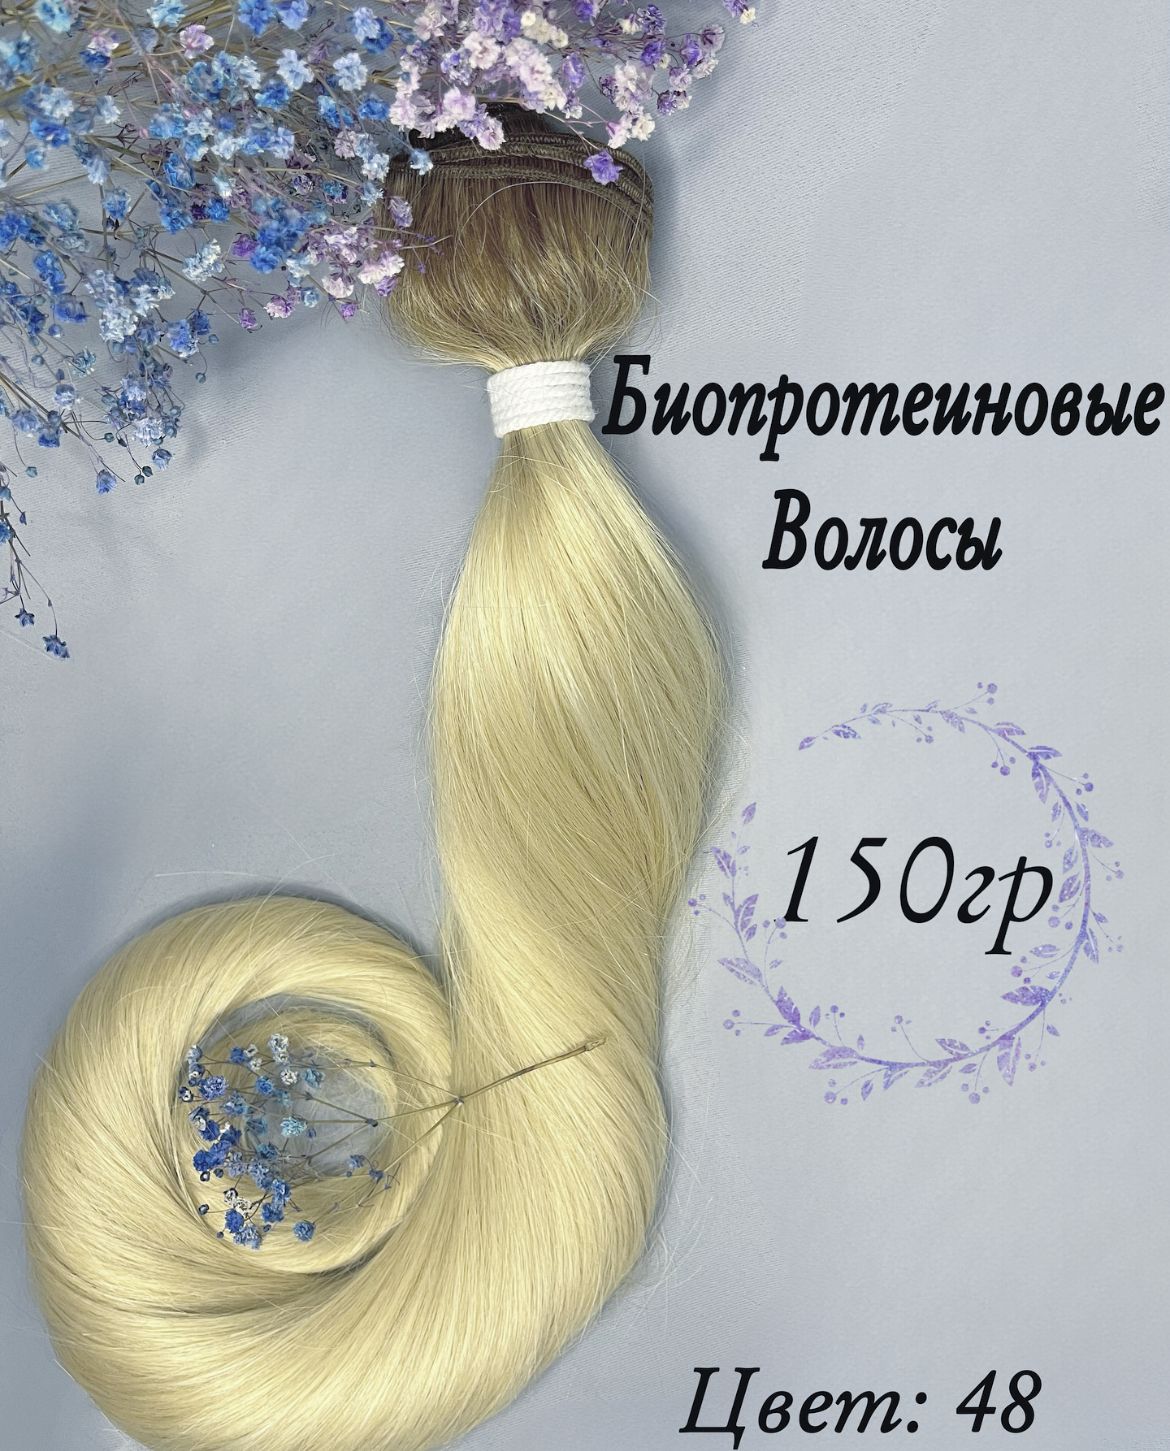 Биопротеиновое наращивание отзывы. Биопротеиновый волос. Биопротеиновый волос фото. Биопротеиновый волос для наращивания отзывы и фото до и после. Биопротеиновый волос для наращивания фото.